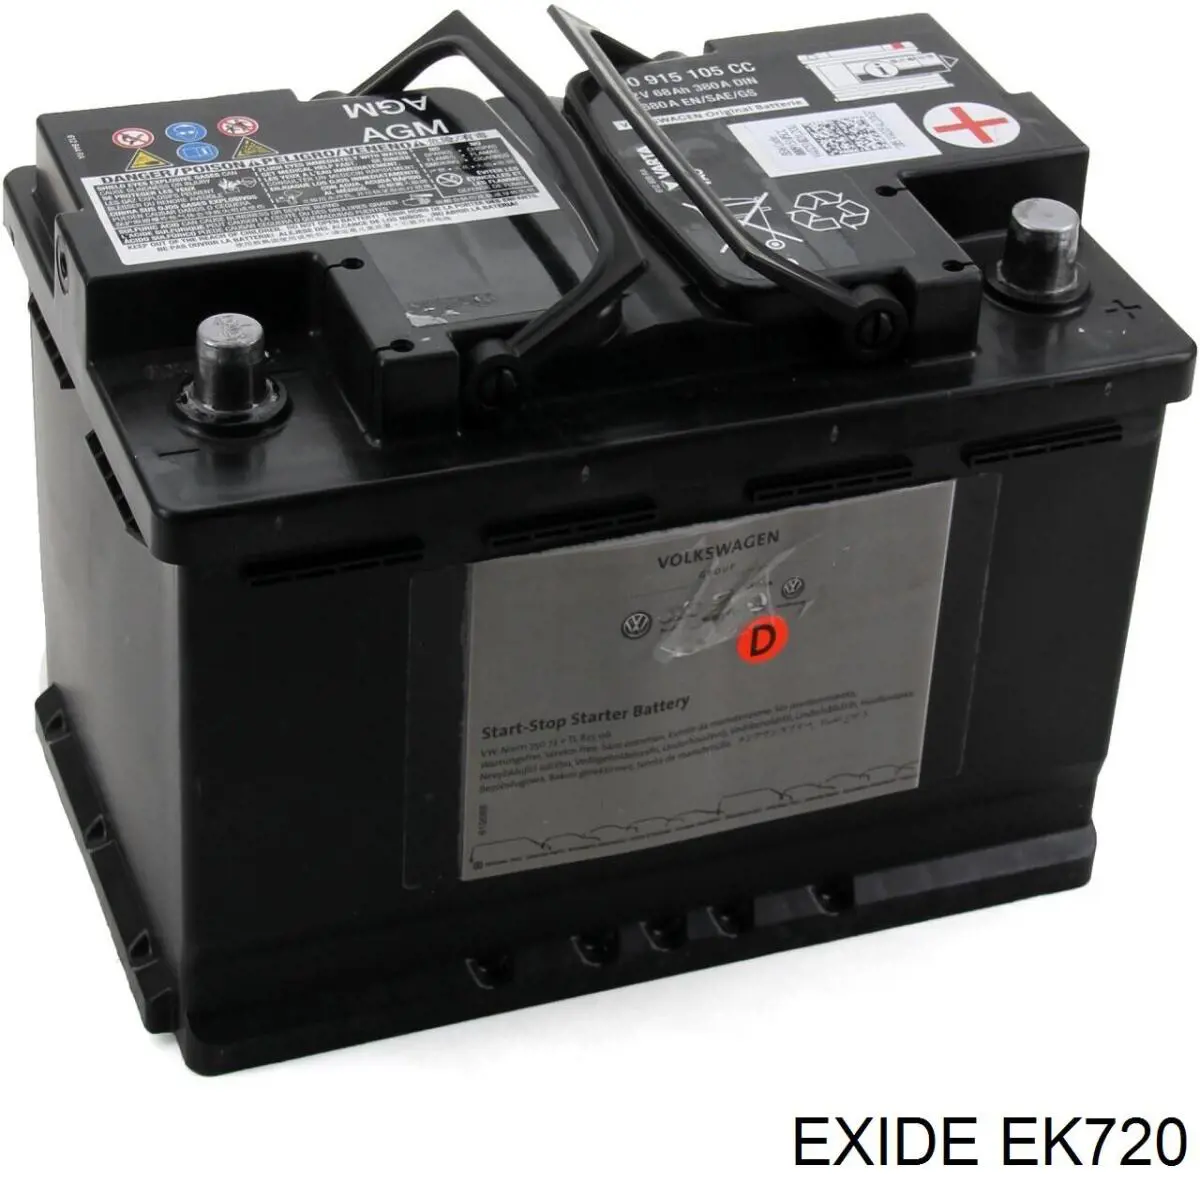 EK720 Exide bateria recarregável (pilha)